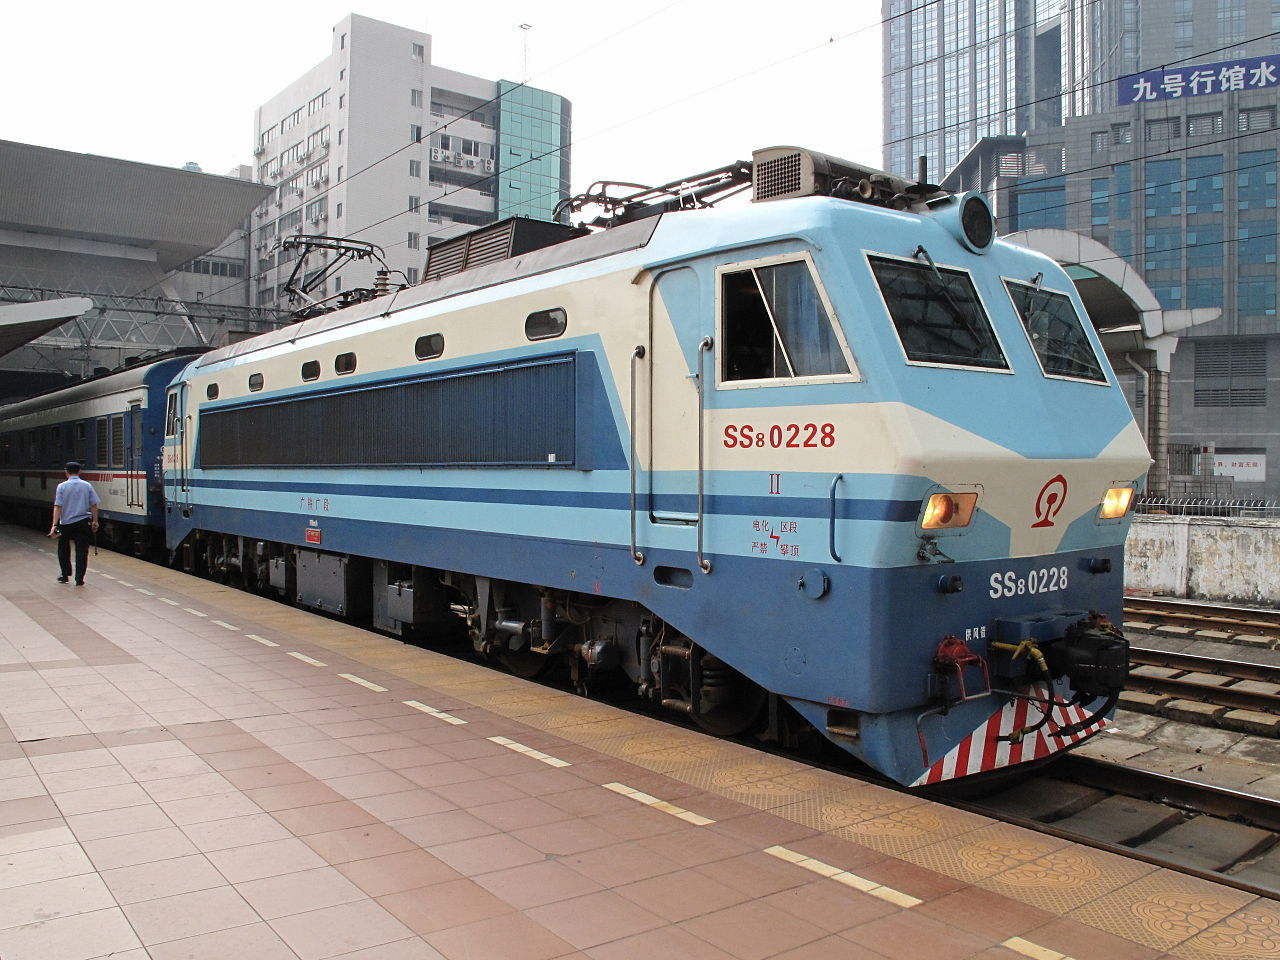 韶山8型0226号机车于广州东站,采用dsa受电弓,圆形顶灯